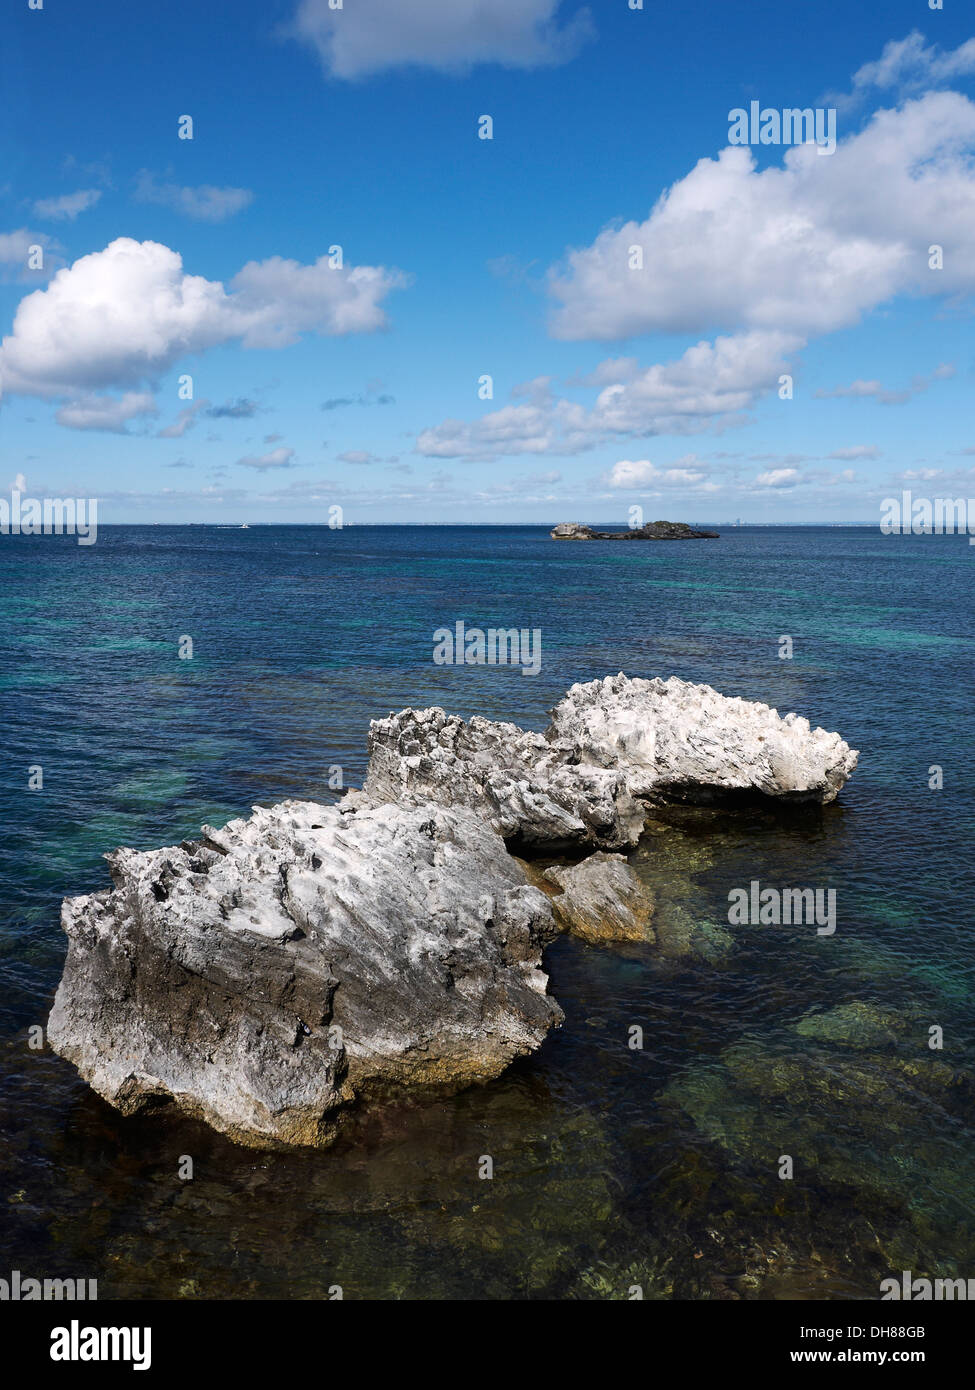 Rottnest Island Australie occidentale Réserve naturelle un rocher entouré par la mer et le ciel Banque D'Images